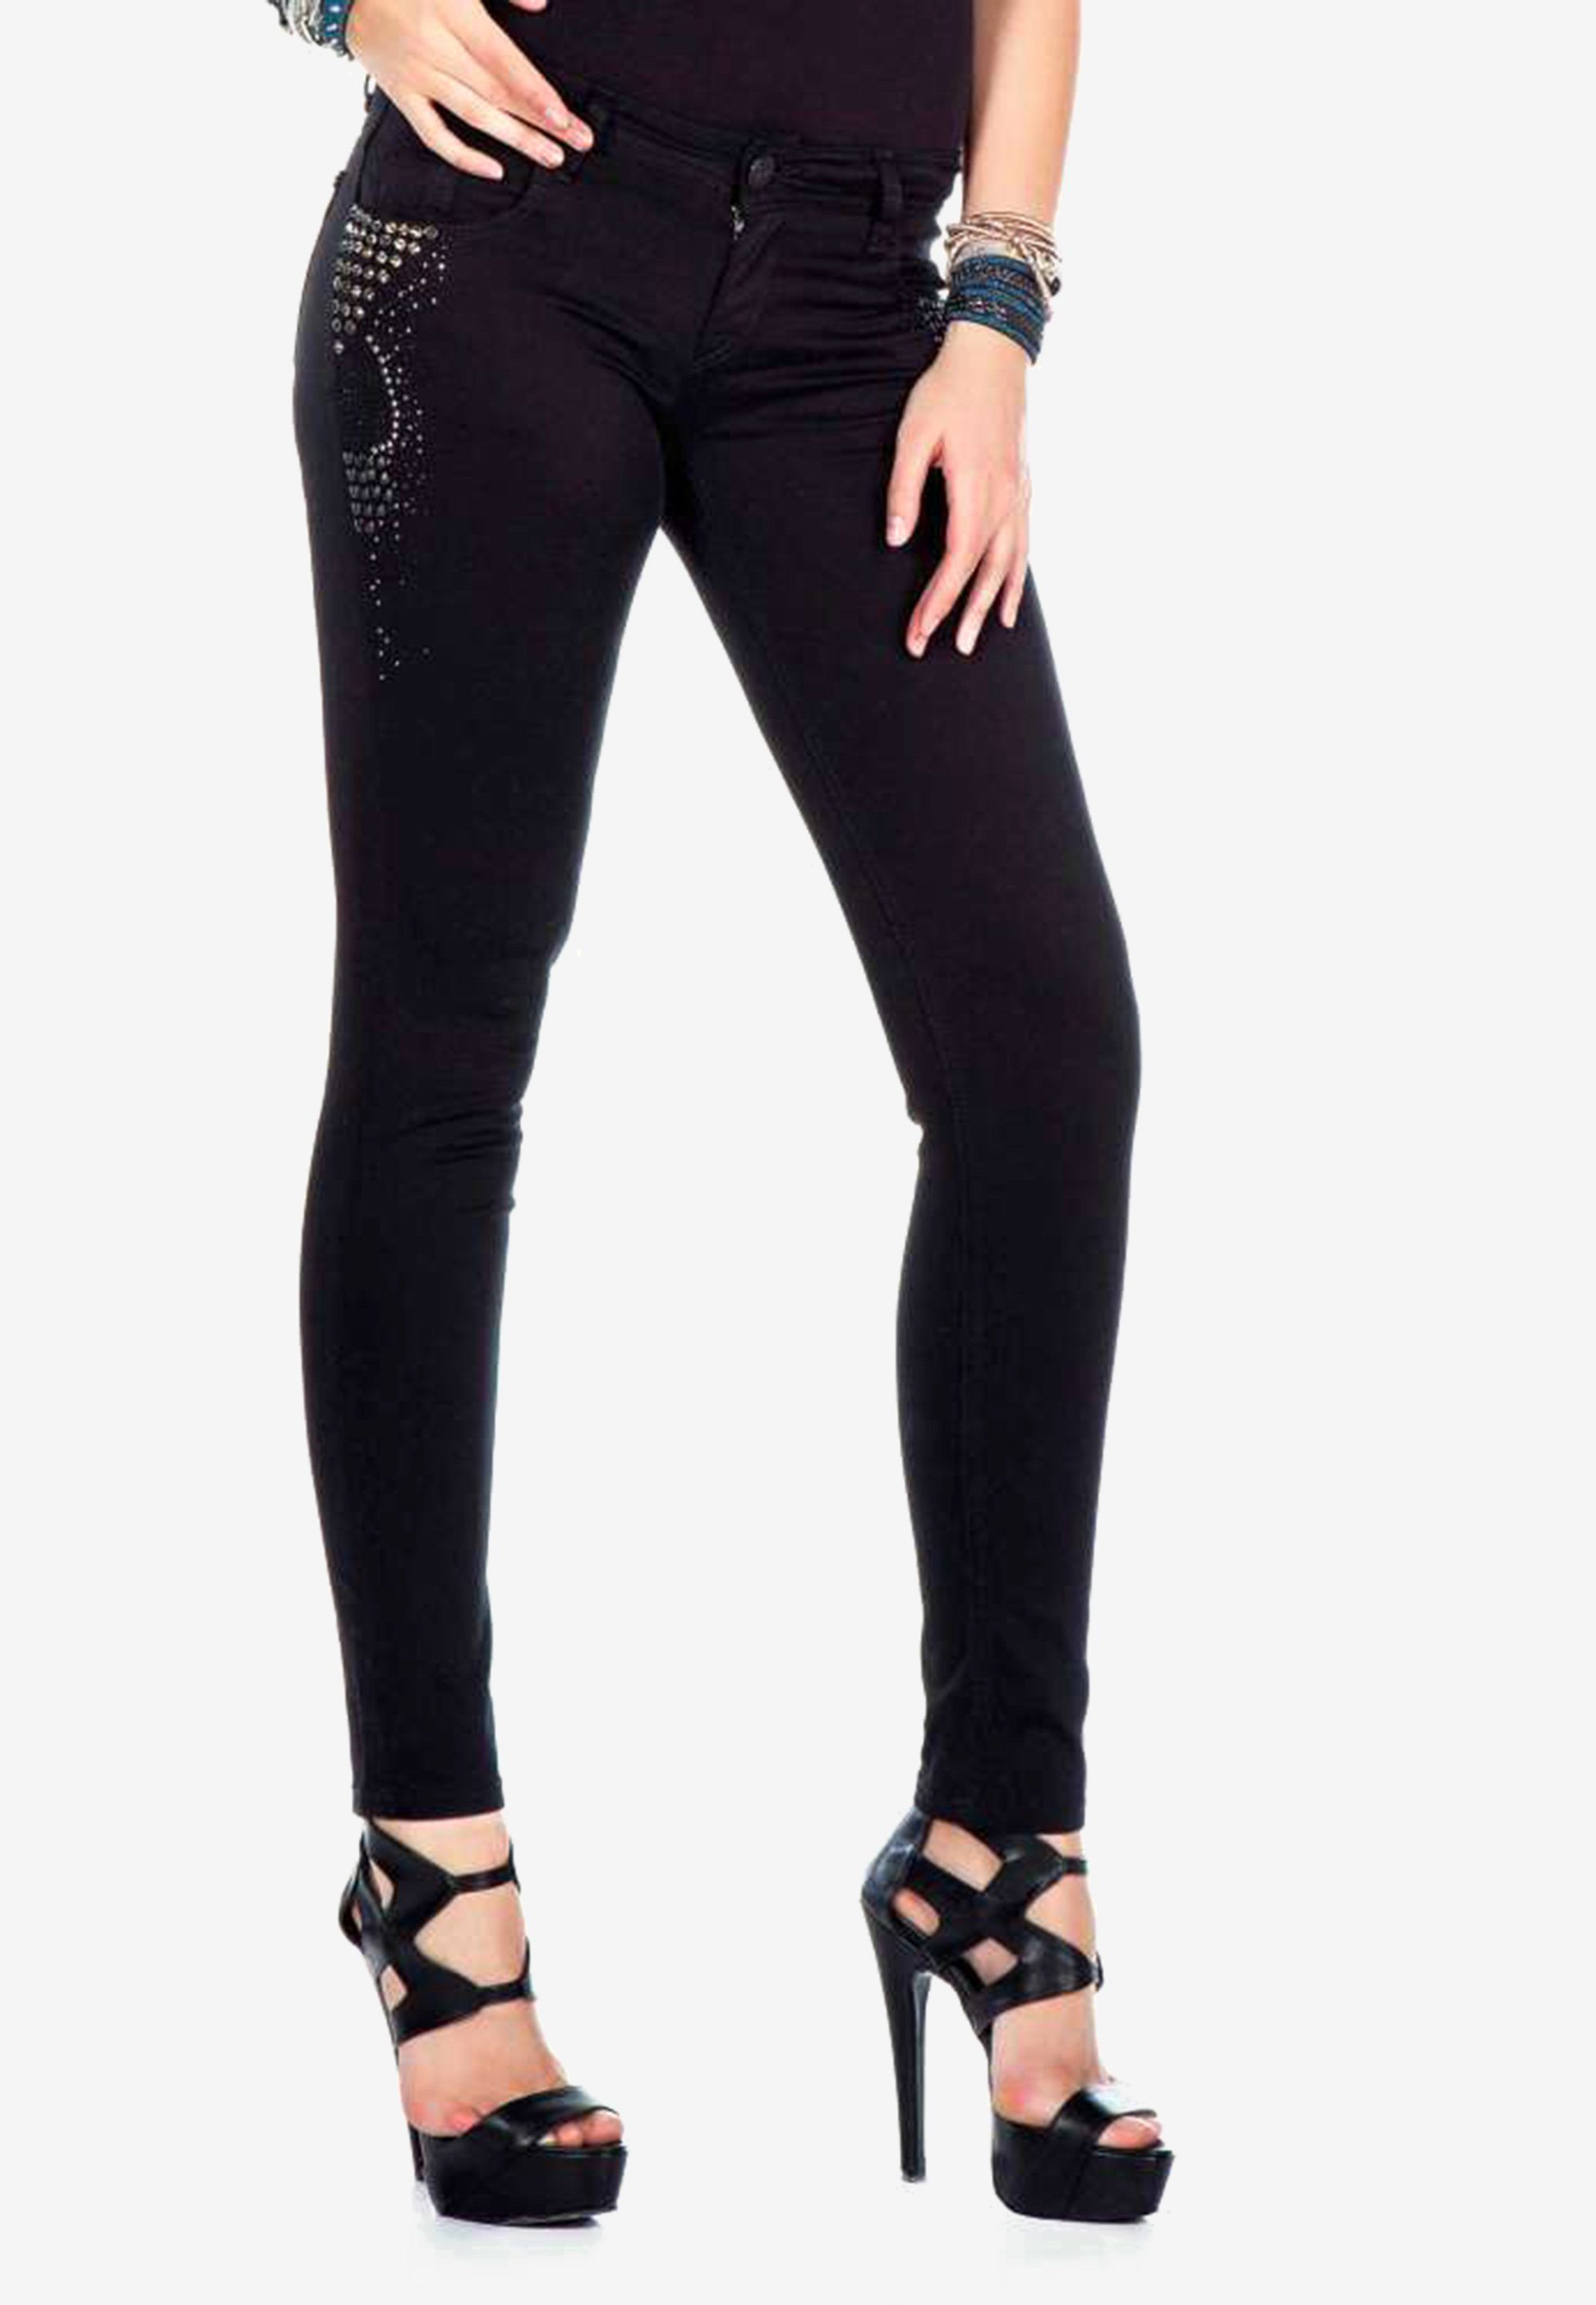 Damen Jeans Cipo & Baxx Slim-fit-Jeans mit stylischer Nietenverzierung und Skinny-Fit